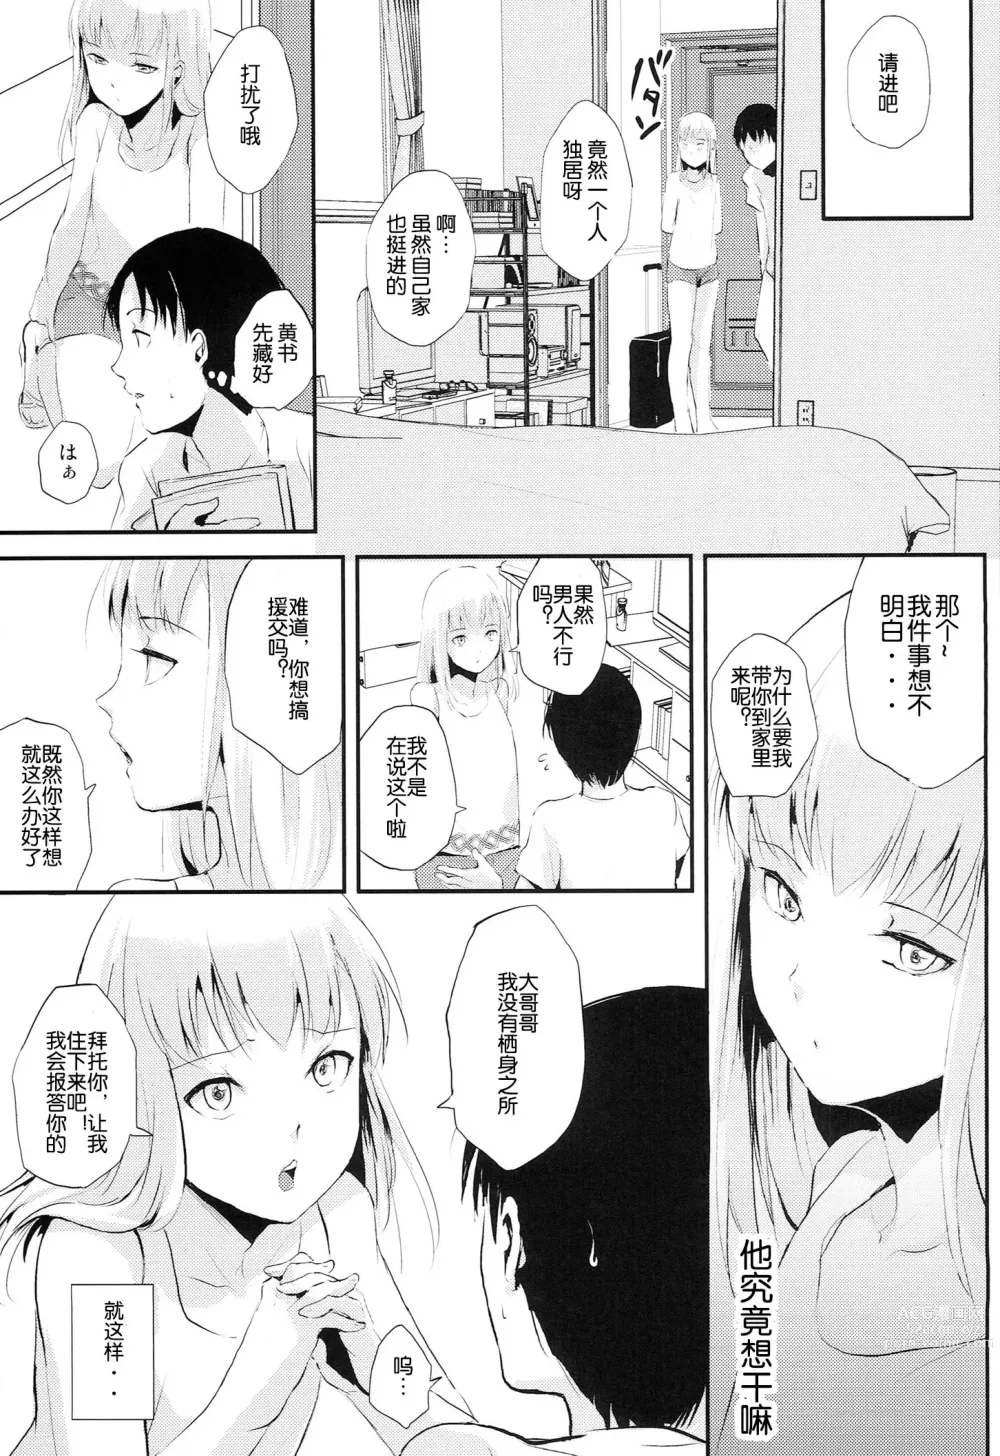 Page 7 of manga Natsu no Takenawa